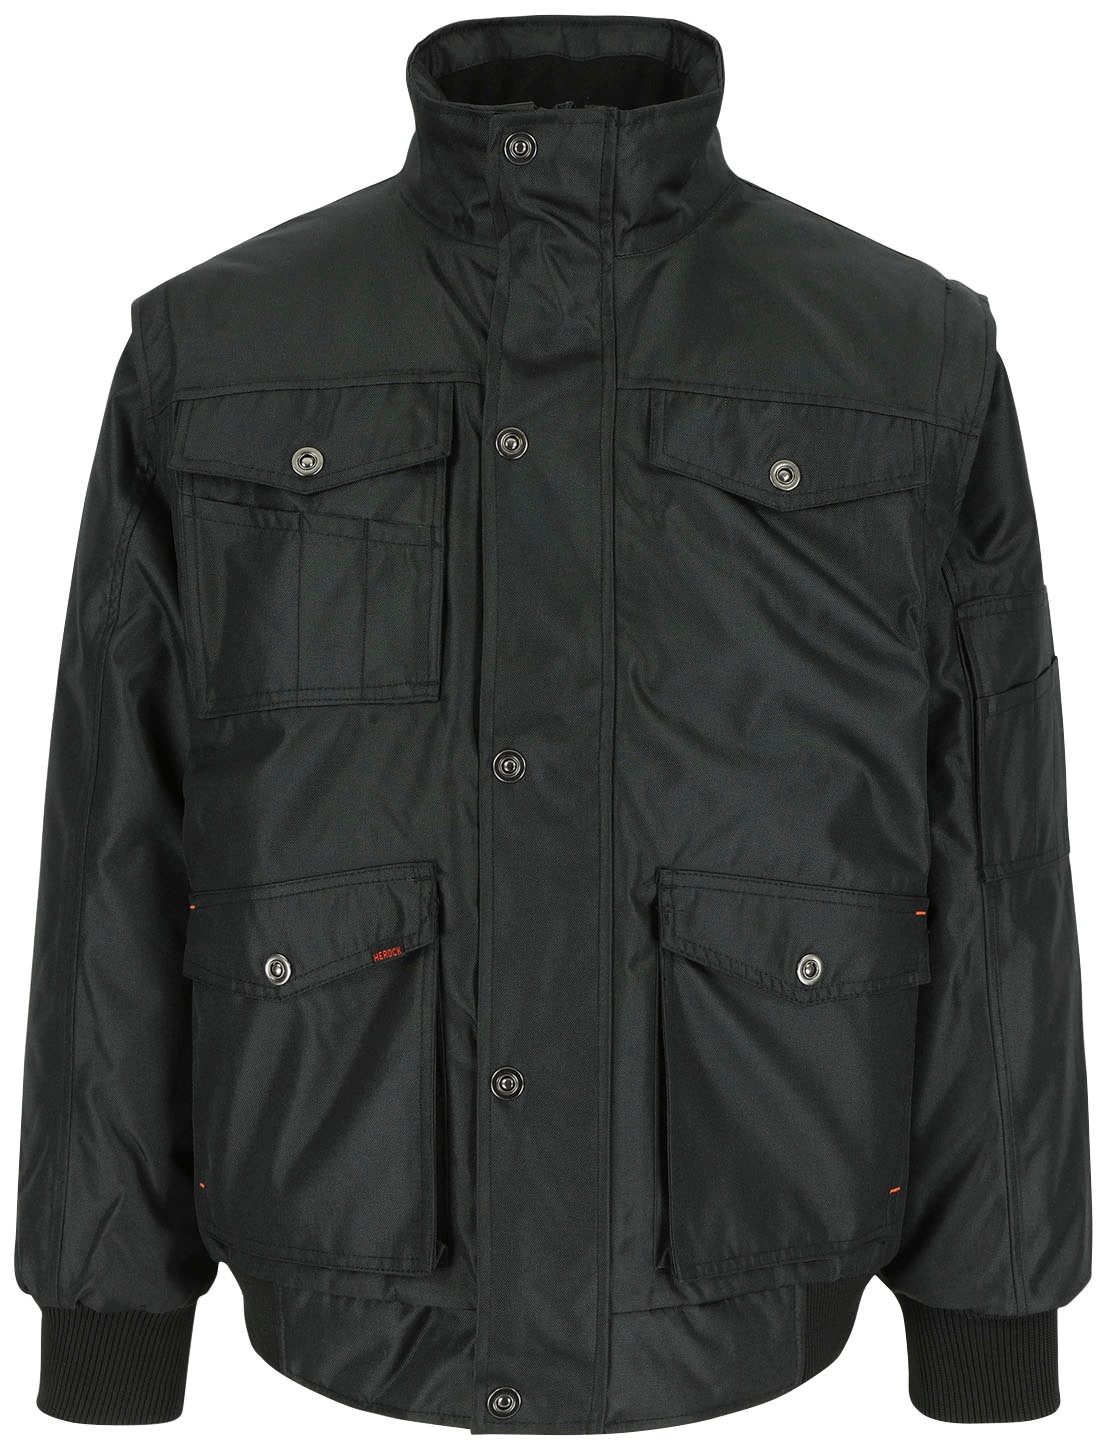 Herock Arbeitsjacke »Balder Jacke«, Atmungsaktive, & Taschen kaufen Jacke vielen winddichte wasserabweisende mit